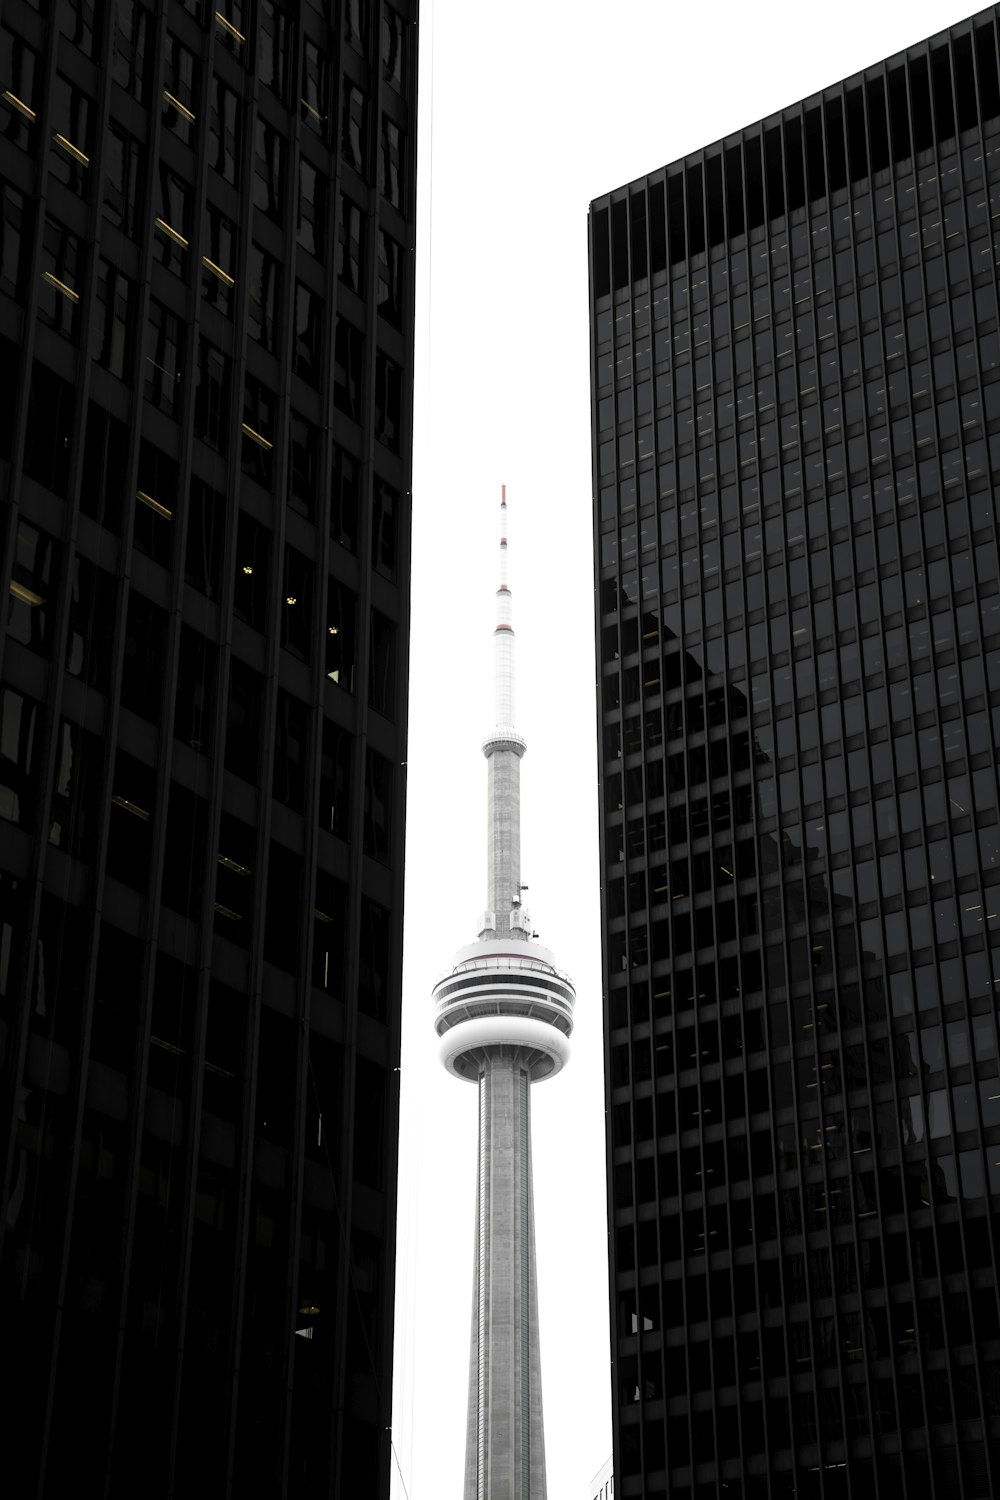 CN tower in between glass skyscrapers